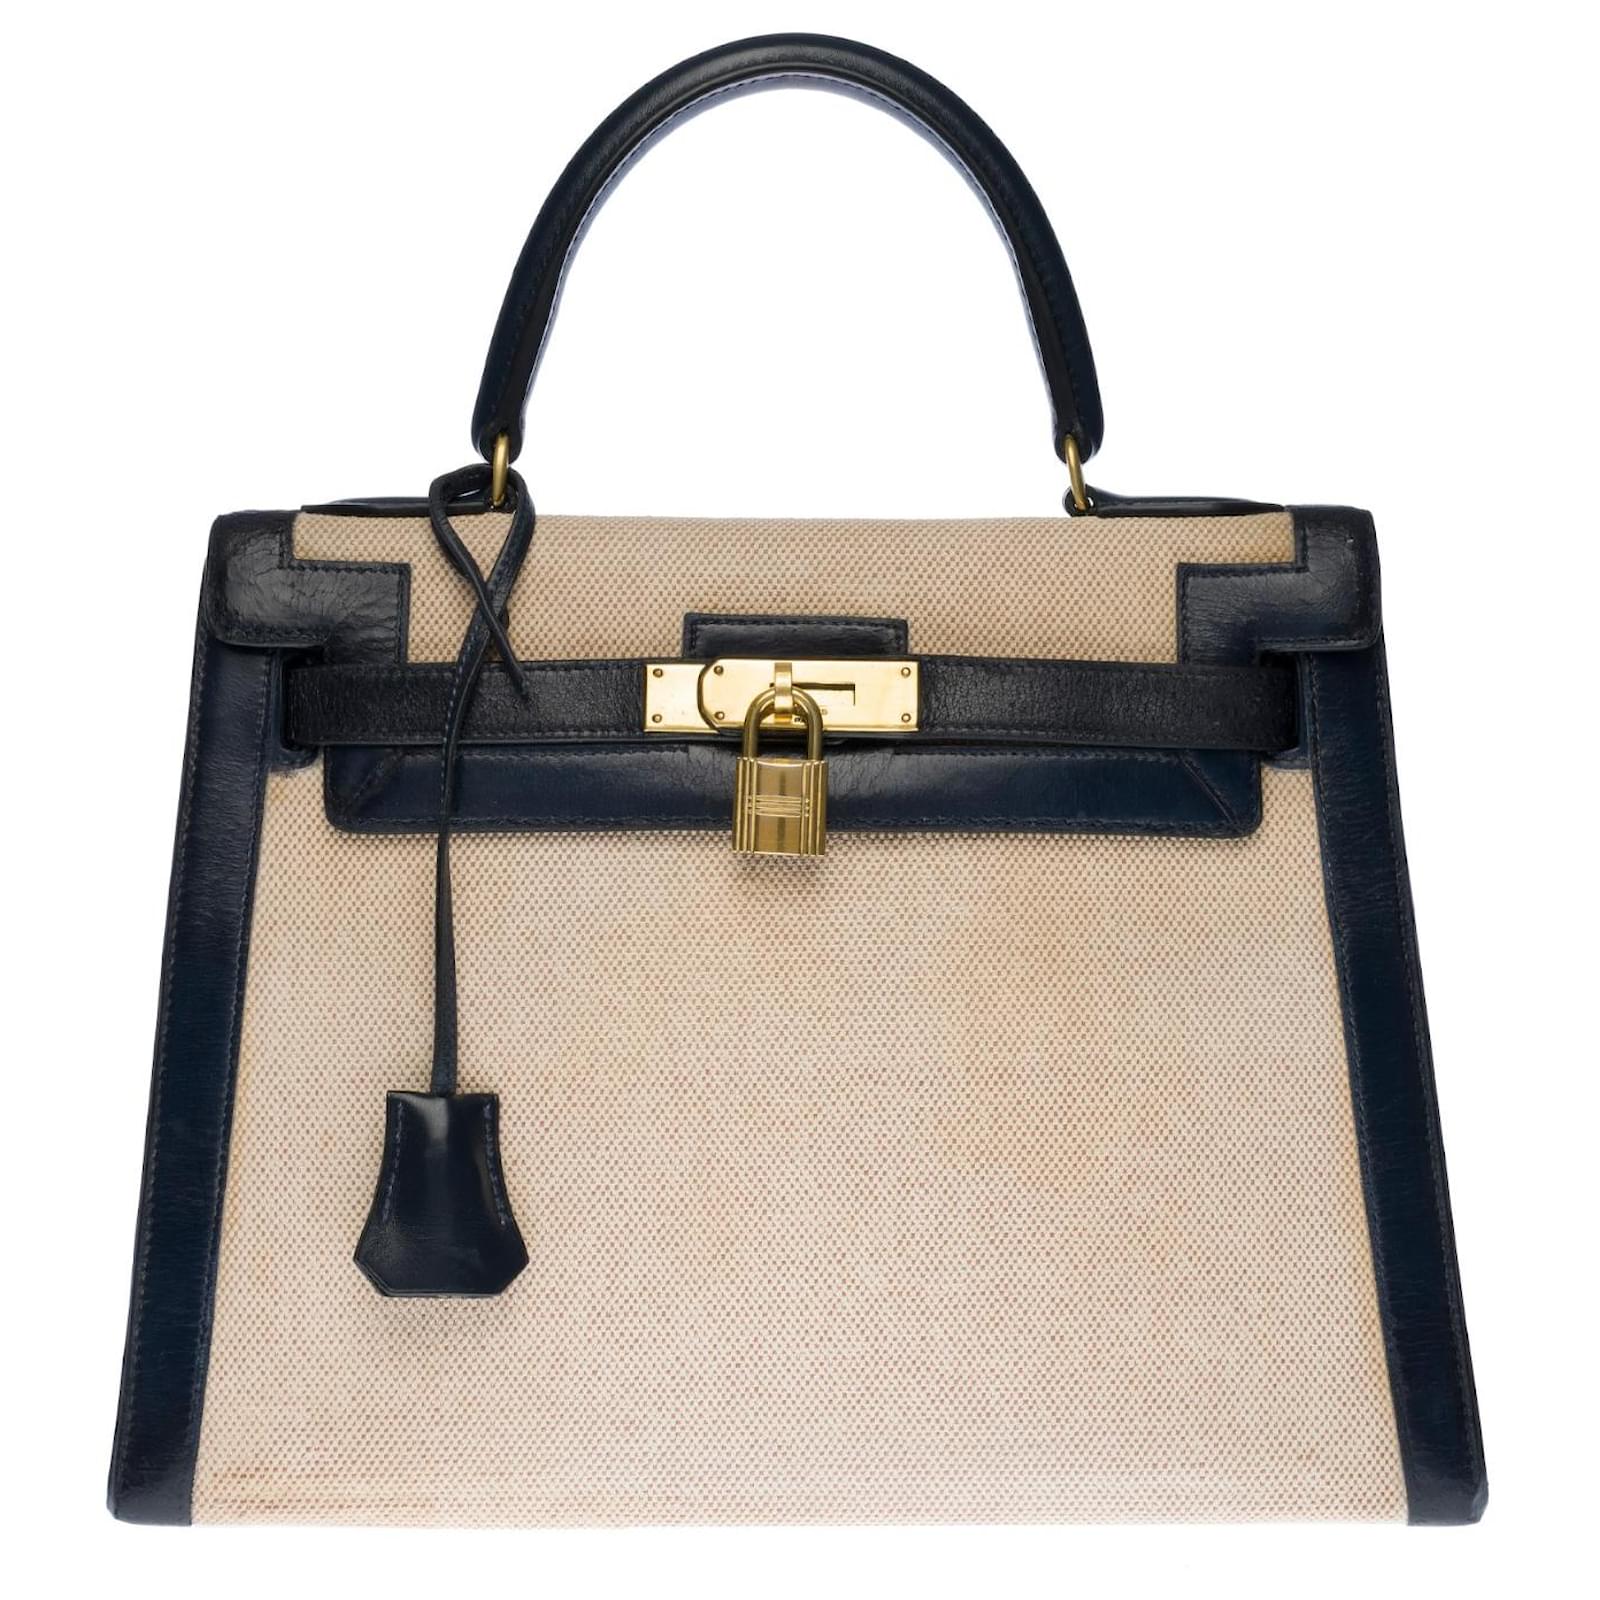 Hermès Rare Hermes Kelly handbag 28 saddle pad in navy blue box